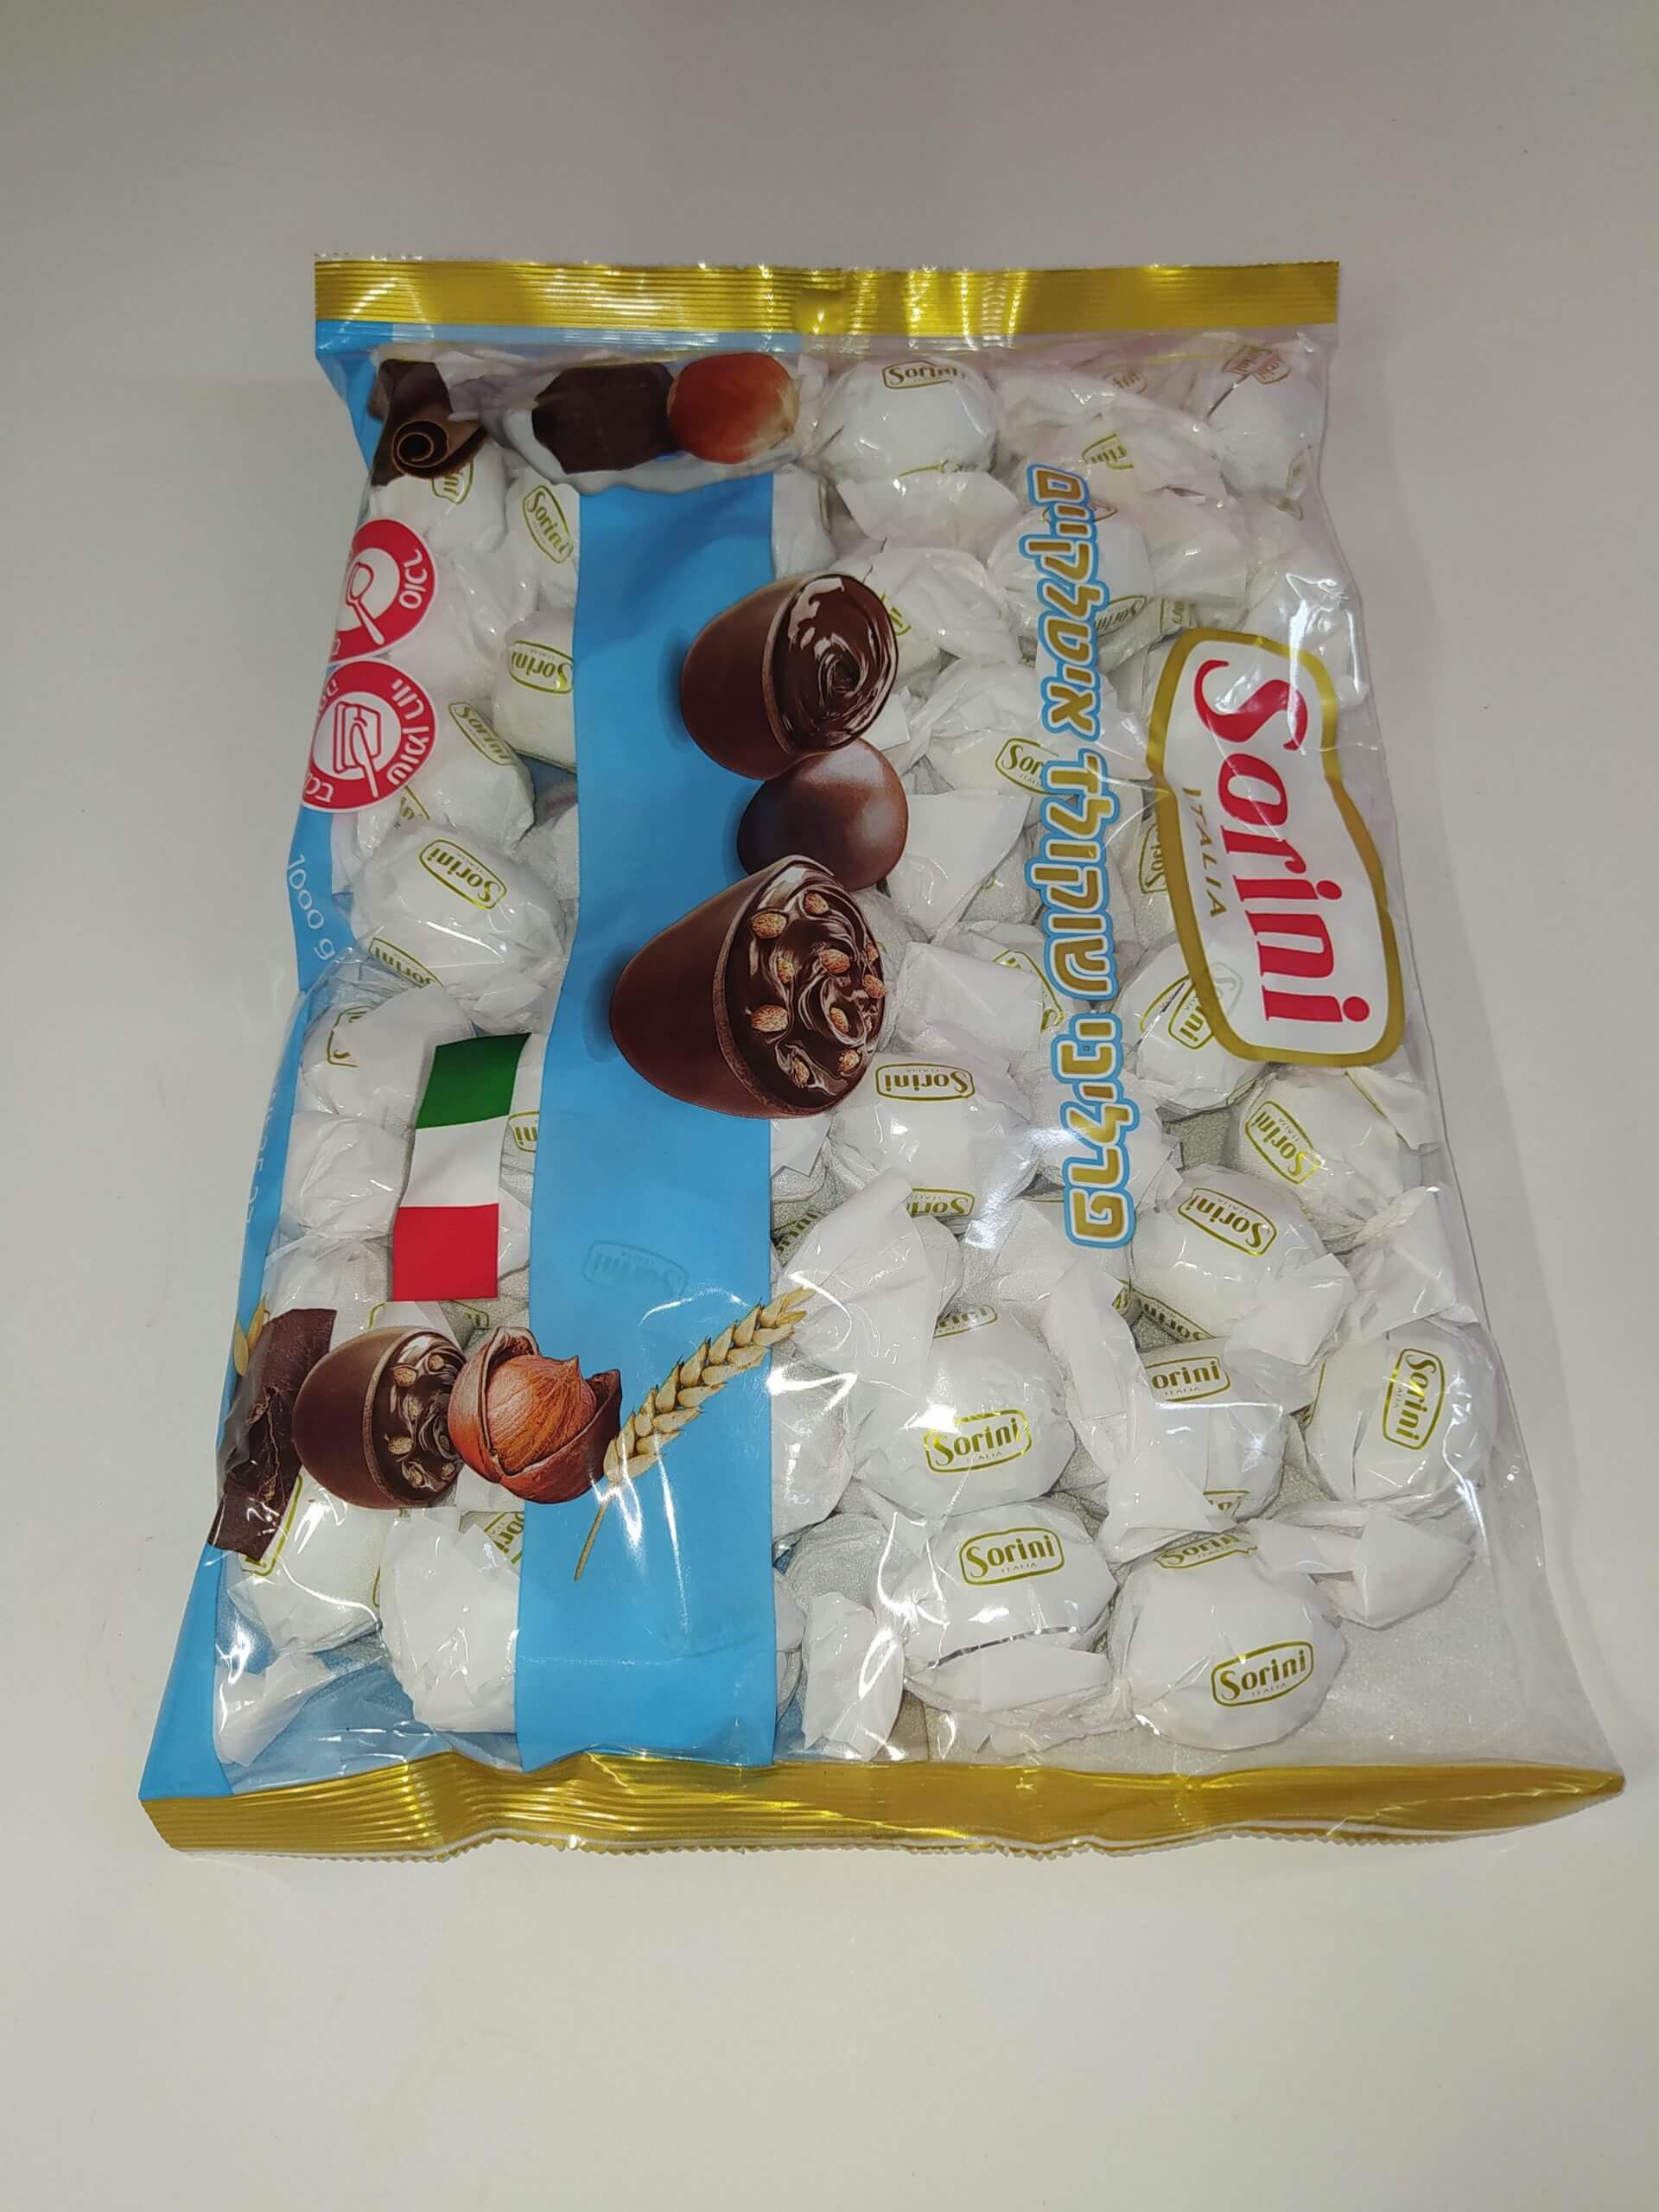 שוקולד איטלקי סוריני פרטה חלב נוגט אגוזים עטיפה לבנה 1 ק”ג